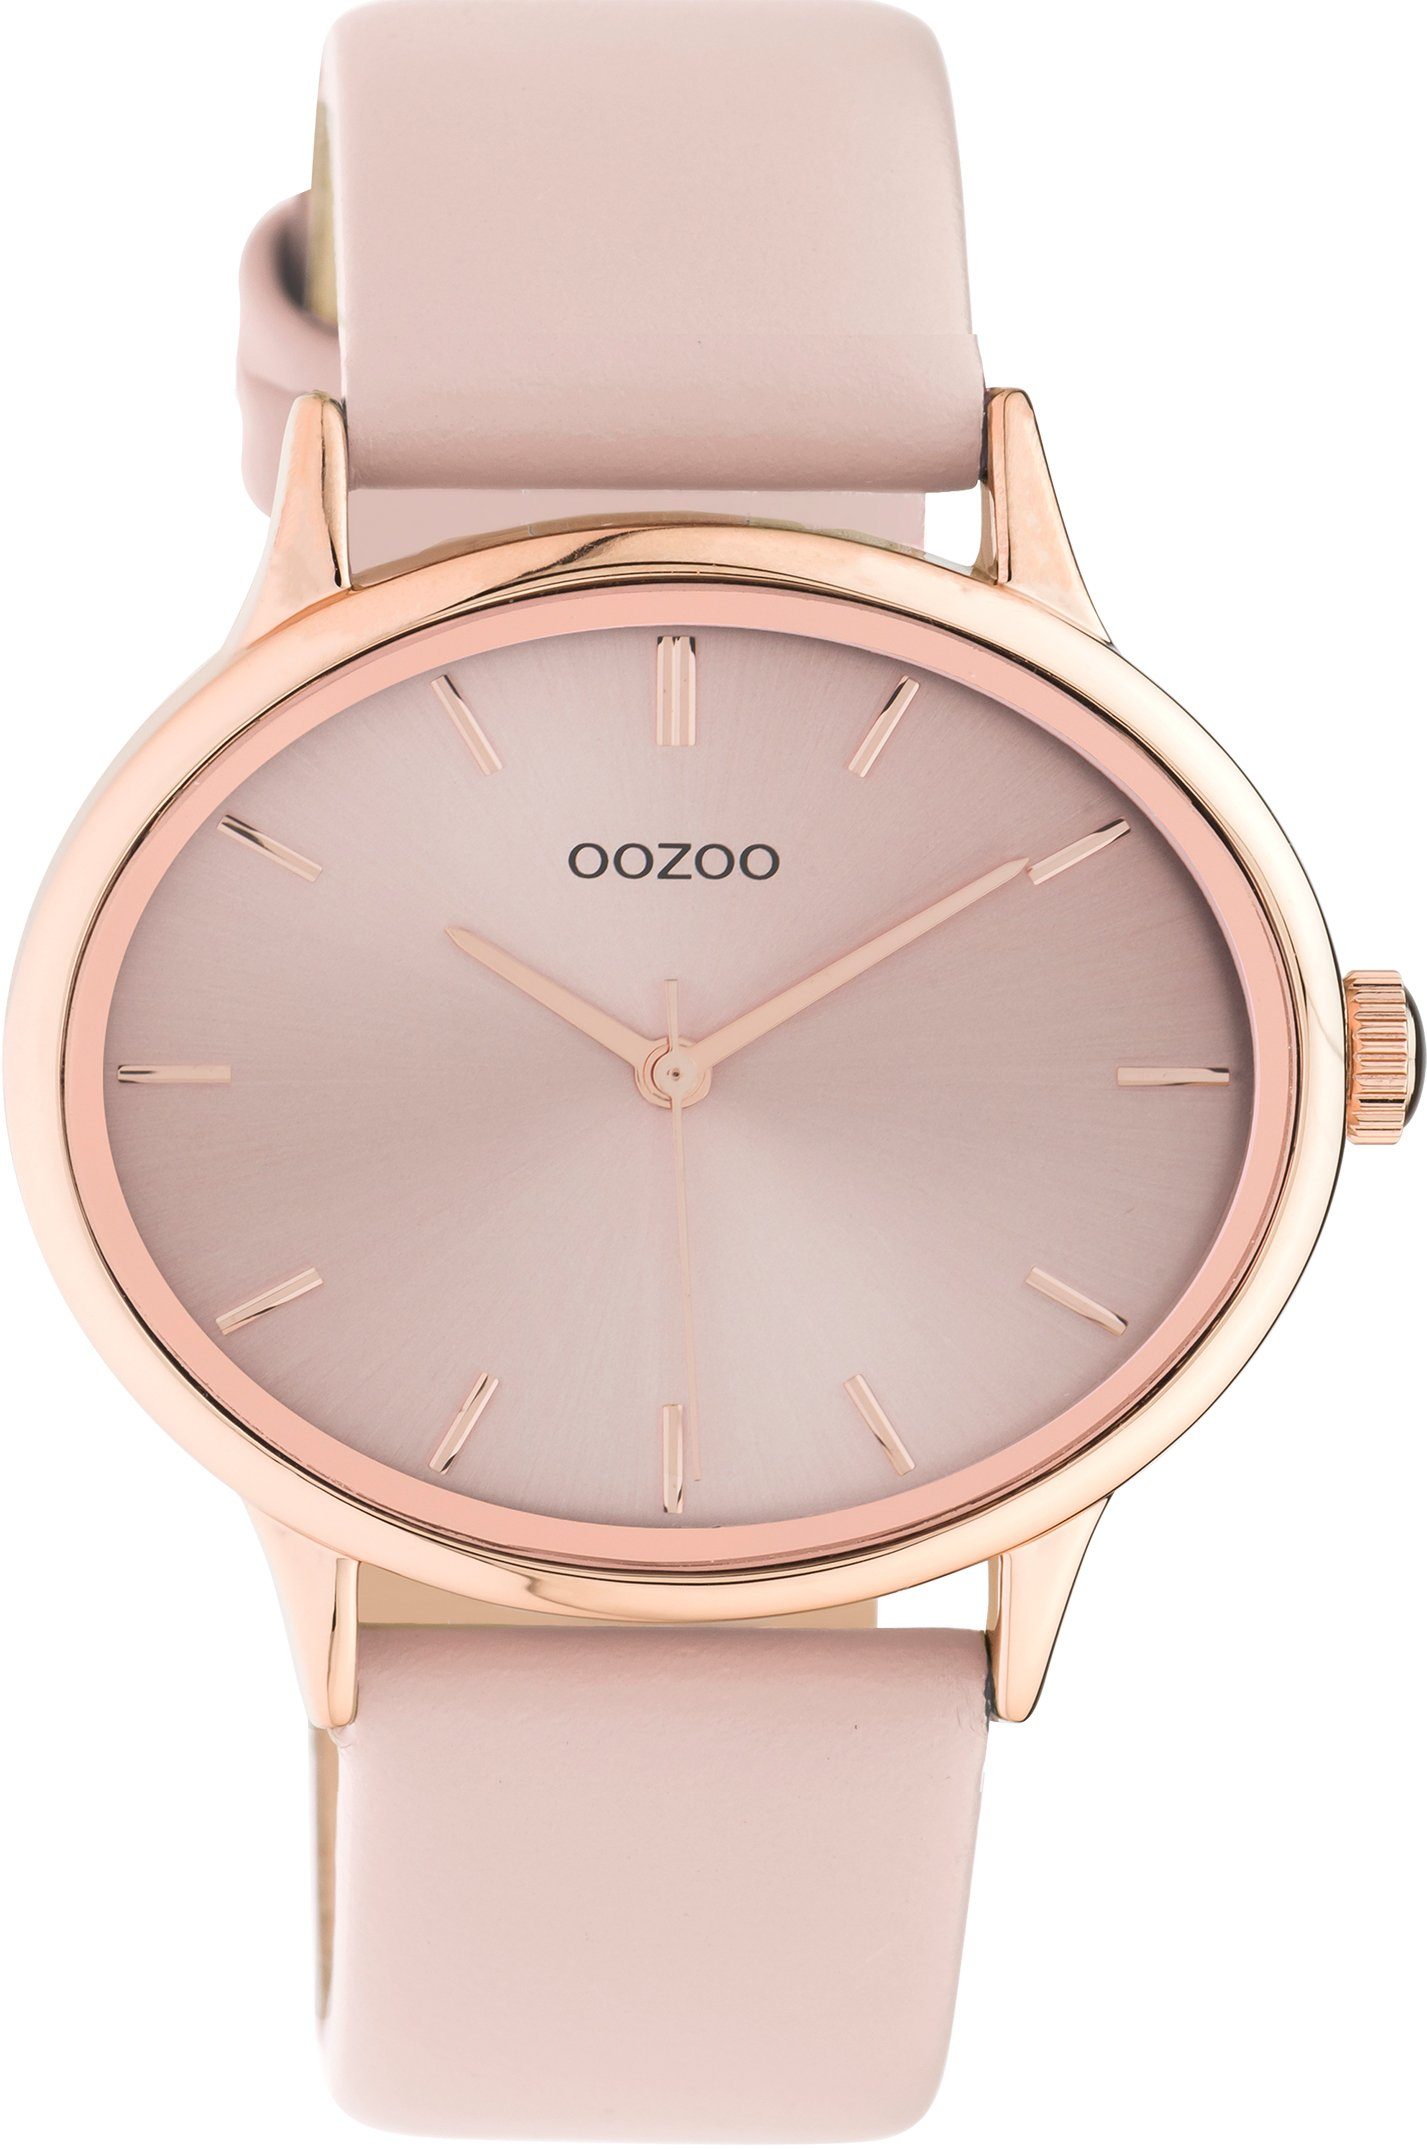 OOZOO Quarzuhr C11052, Armbanduhr, Damenuhr